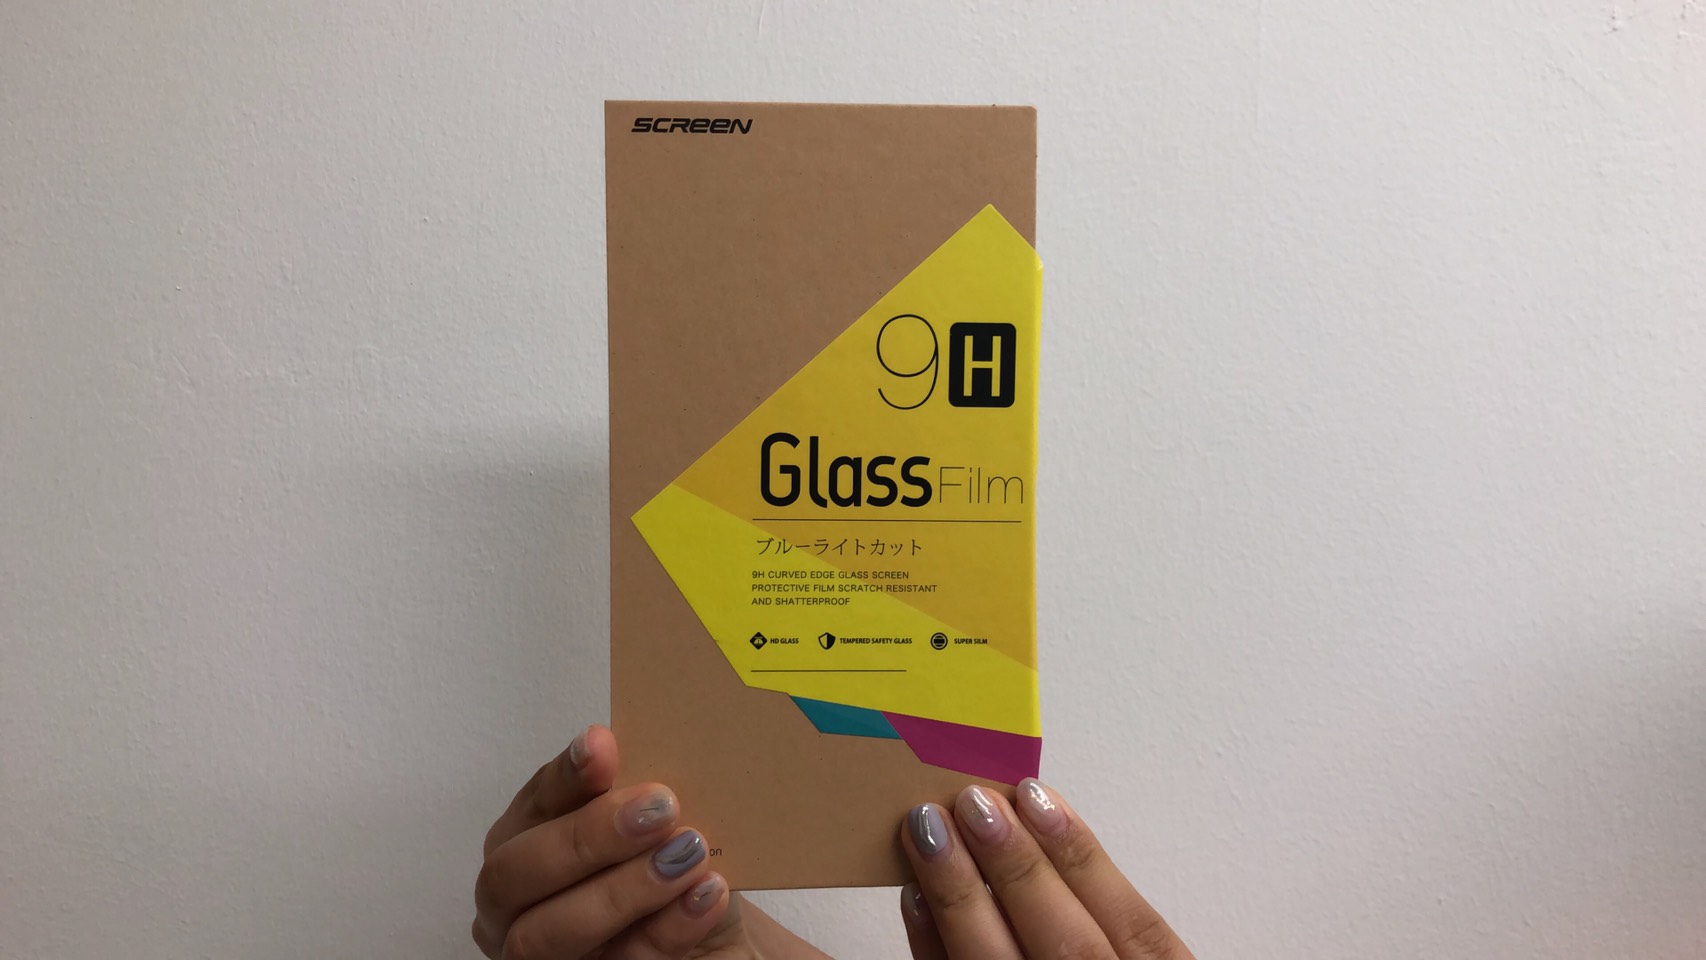 疑惑のiPhoneガラスフィルムSCREEN_9H_Glass_Film（スクリーン）の紹介！